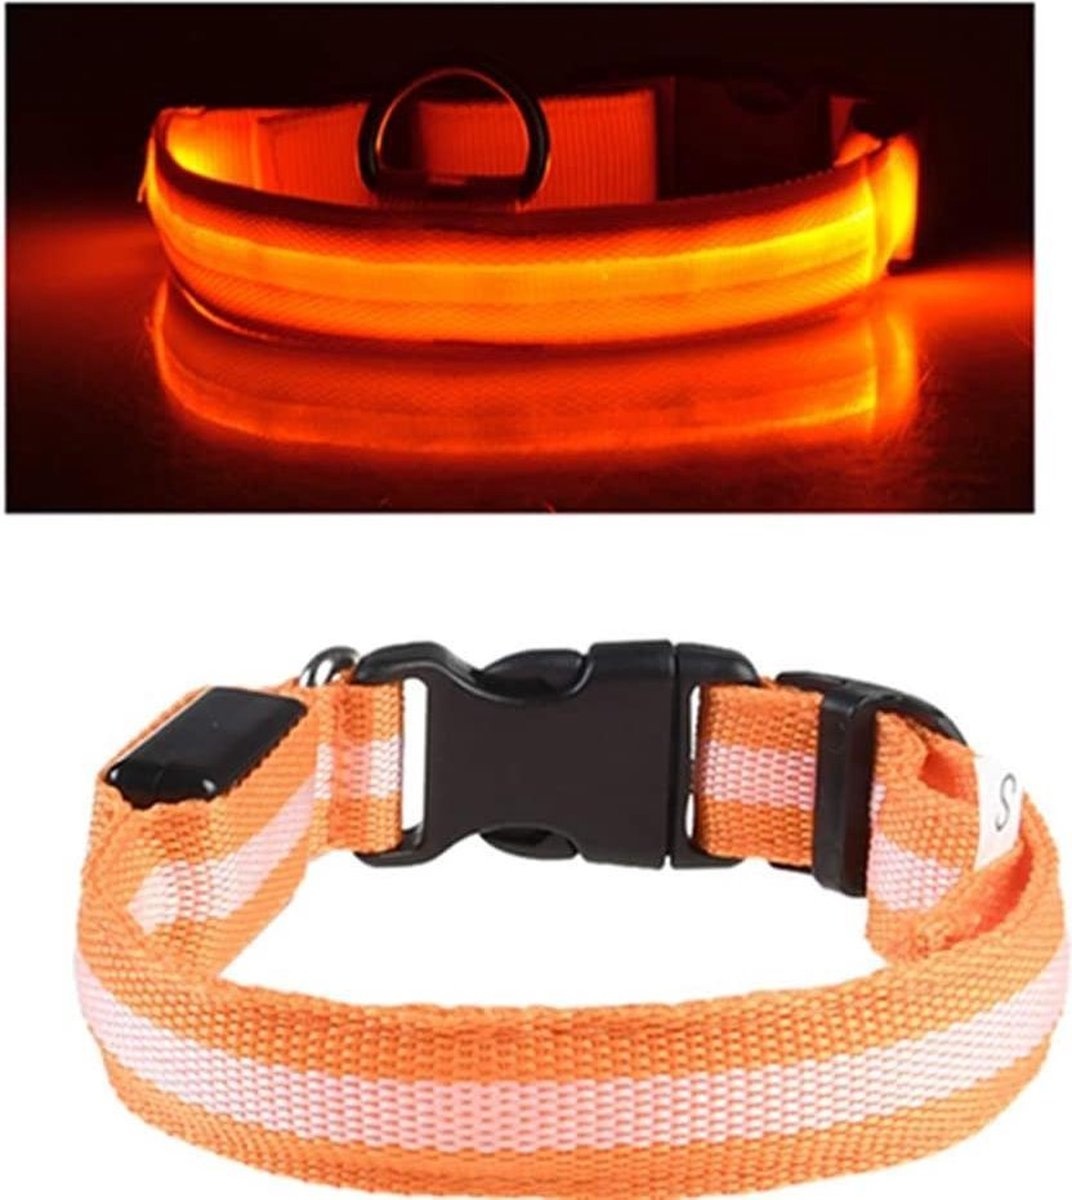 Voorschrijven Armoedig Vermoorden Oranje LED hondenhalsband USB oplaadbaar Super Bright Safety Pet Collar  verhoogde zichtbaarheid | Devoordeligedrogisterij.nl